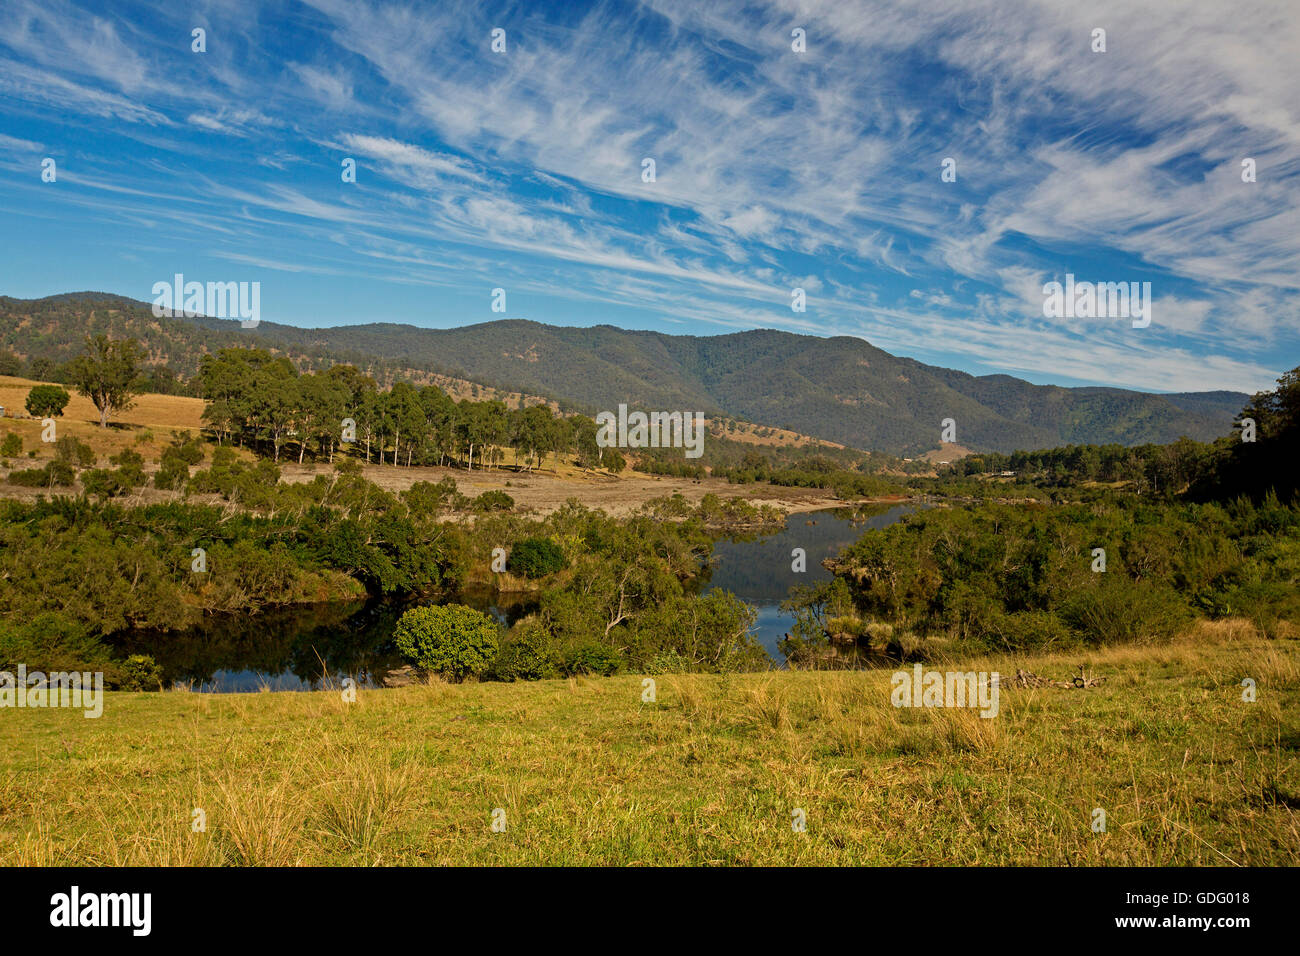 Paysage magnifique, Mann River trancheuse à travers des bois, des herbes d'or, les collines boisées de Great Dividing Range sous ciel bleu , Australie Banque D'Images